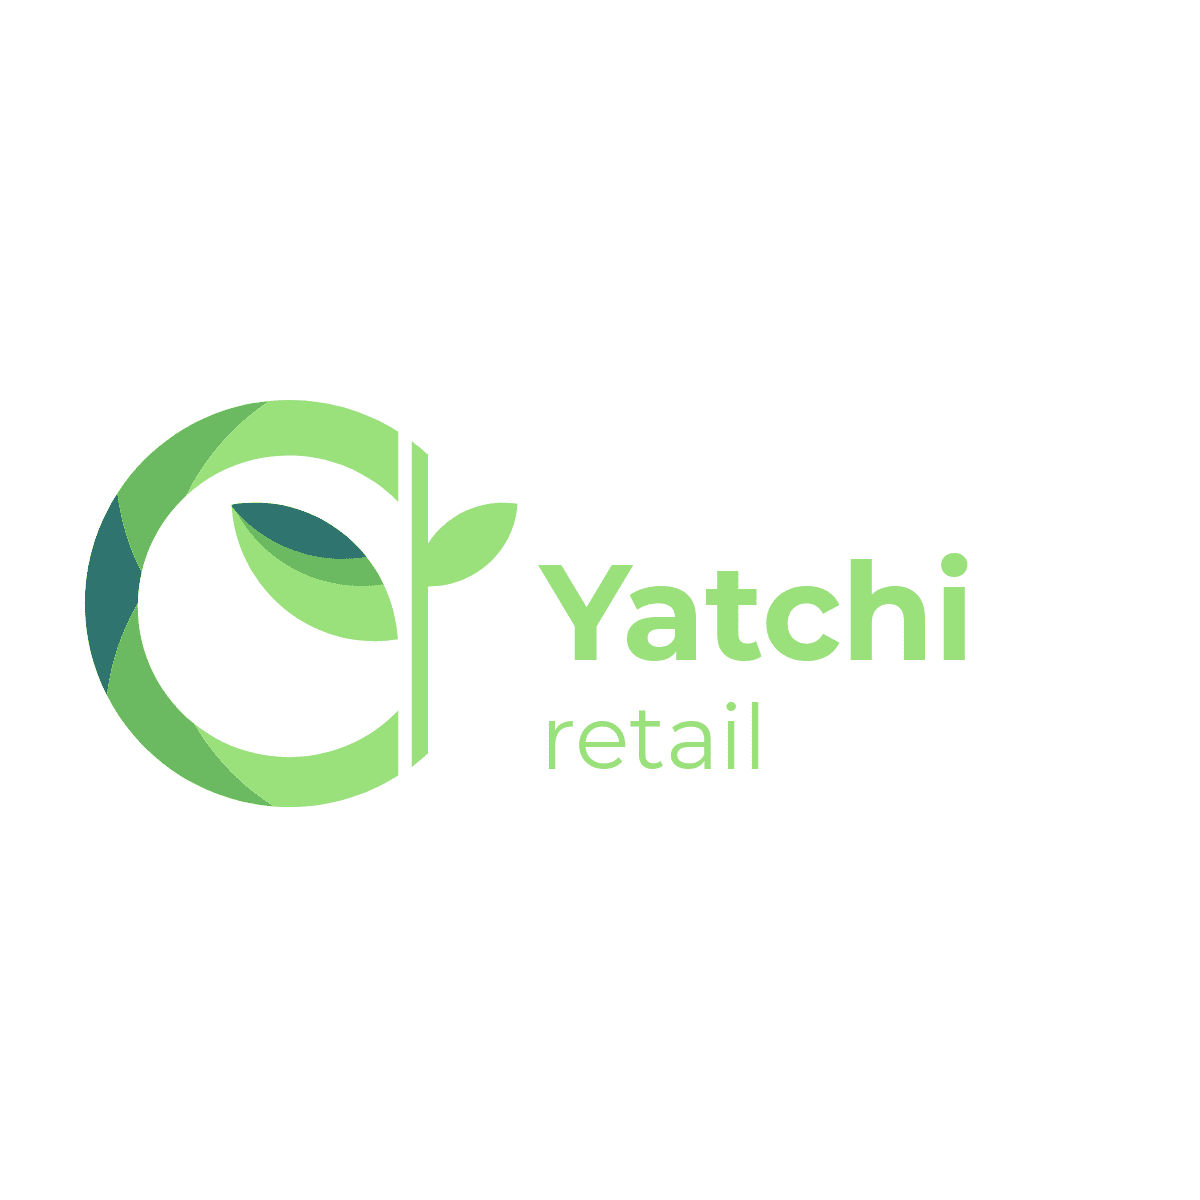 Yatchi retail Logo